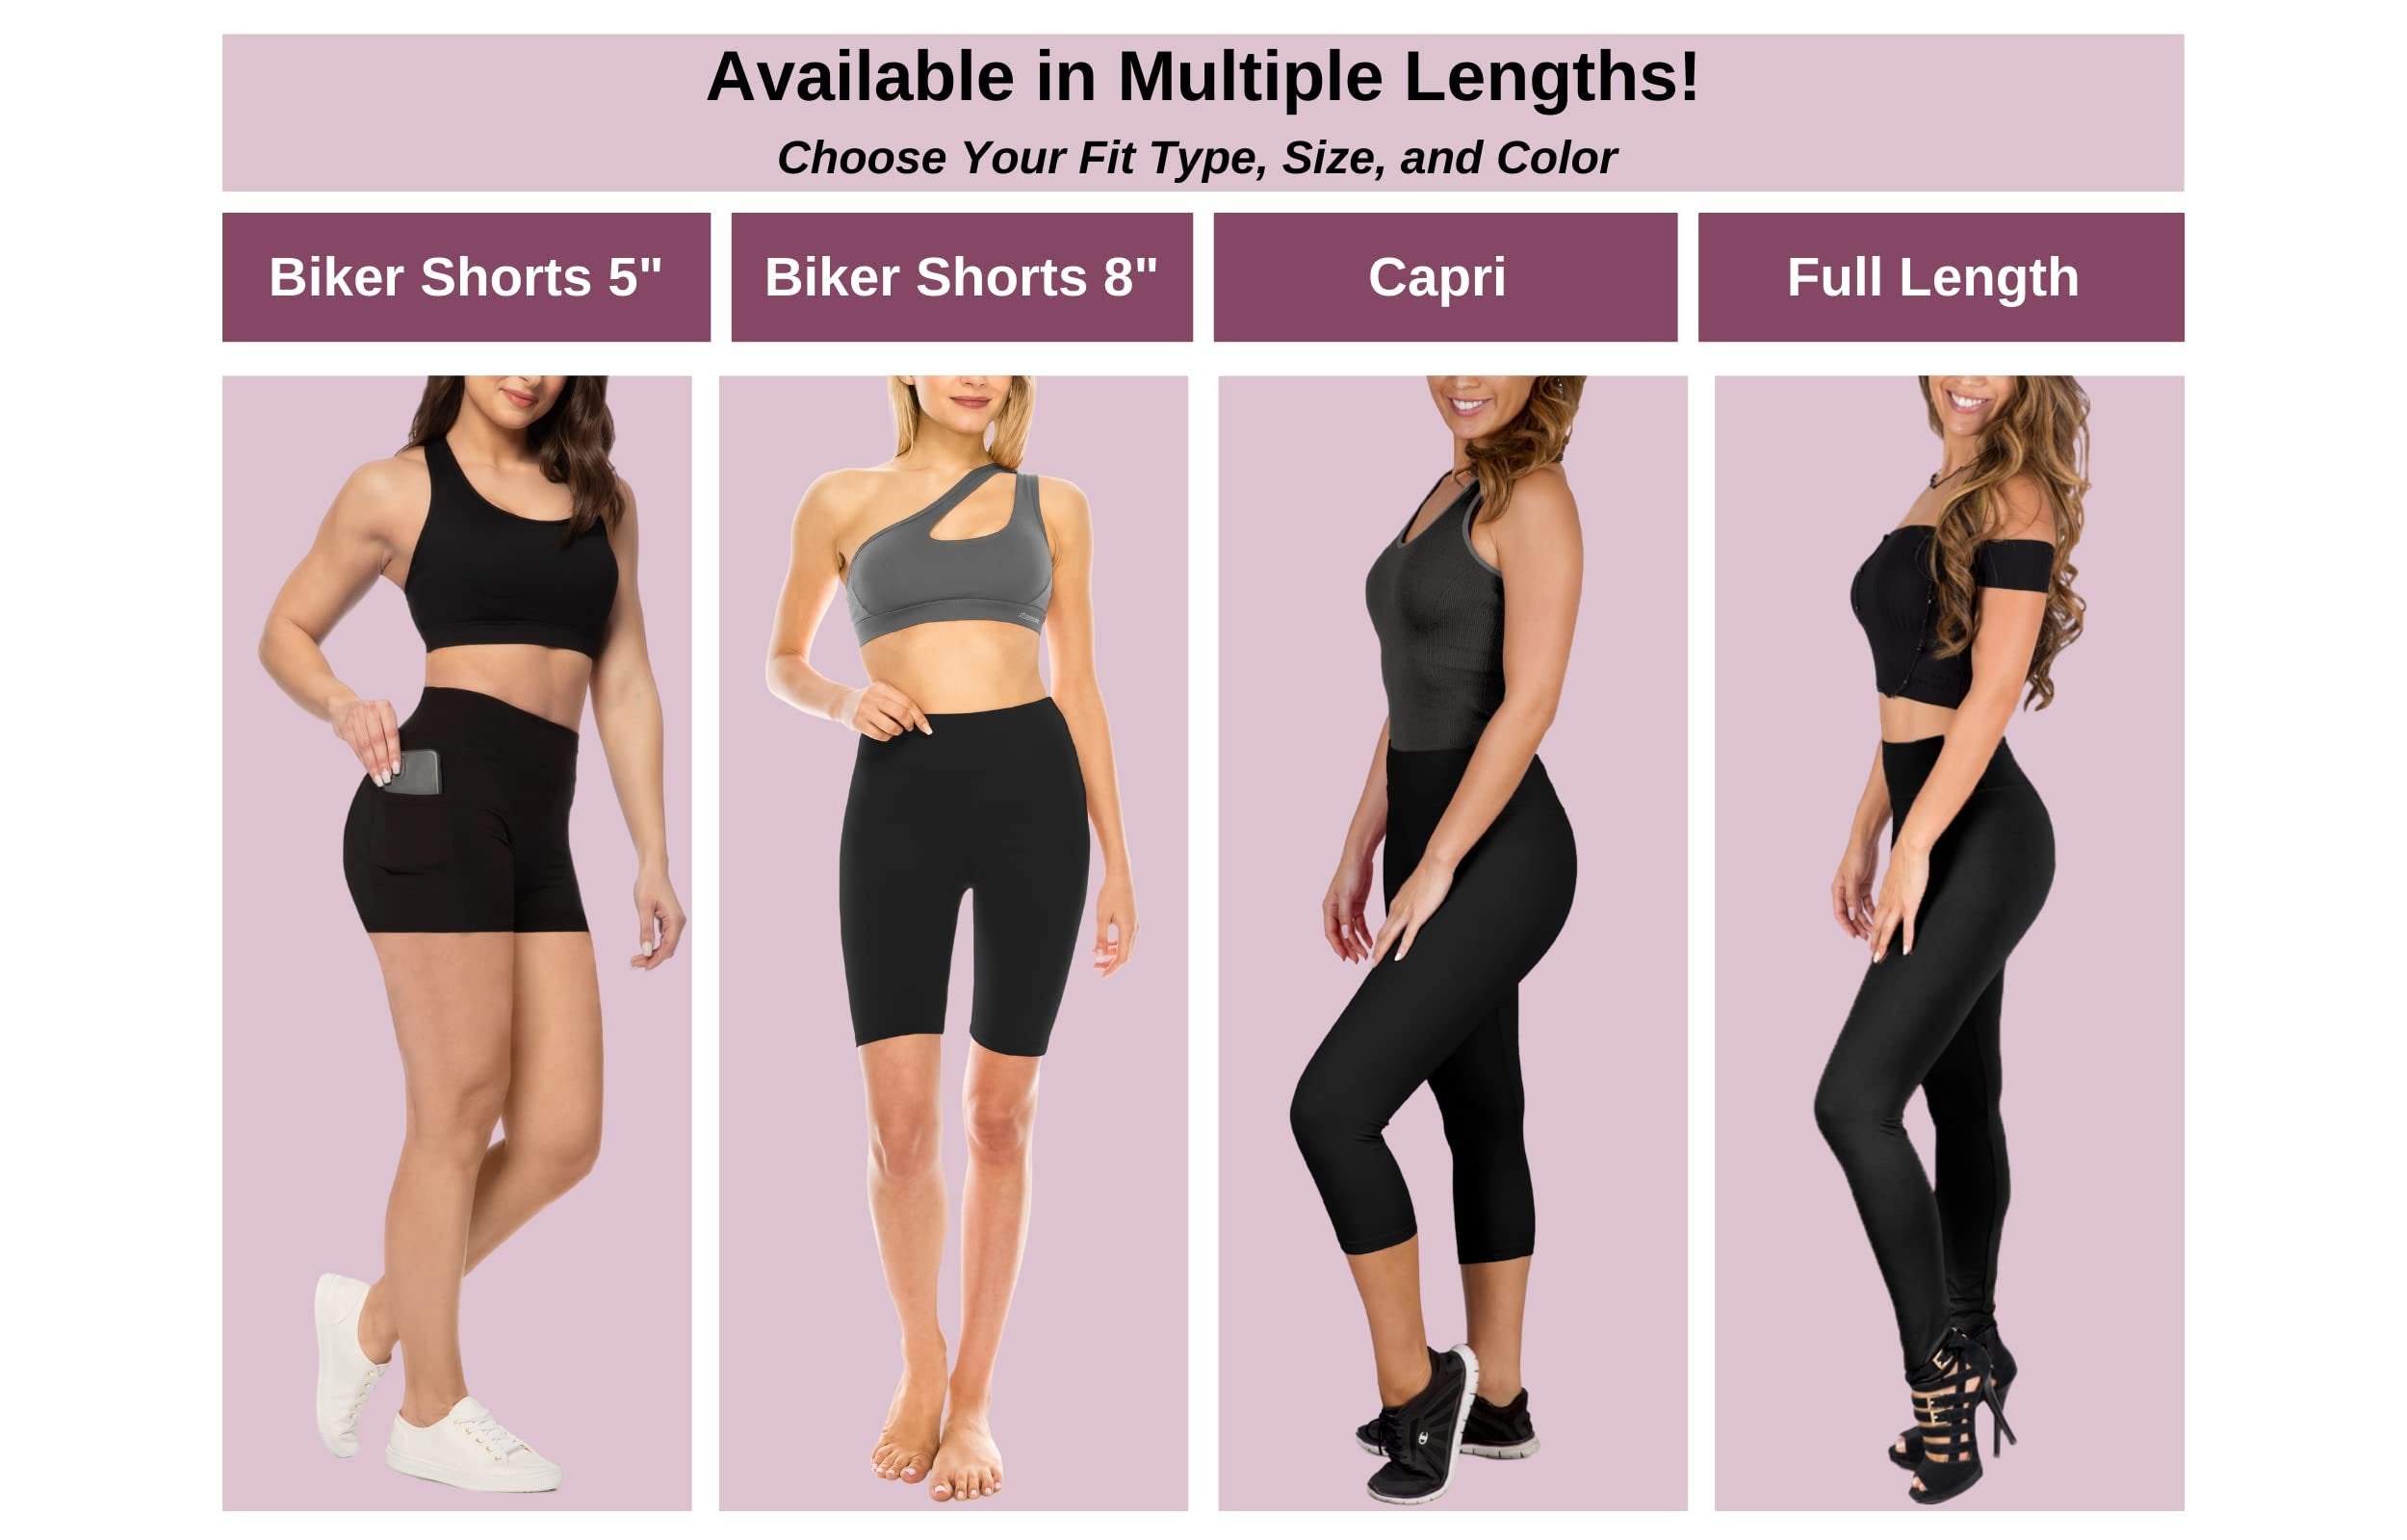 SATINA High Waisted Capri Leggings for Women - Capri Leggings for Women - High Waist for Tummy Control - Old Rose Capri Leggings for |3 Inch Waistband (One Size, Old Rose)